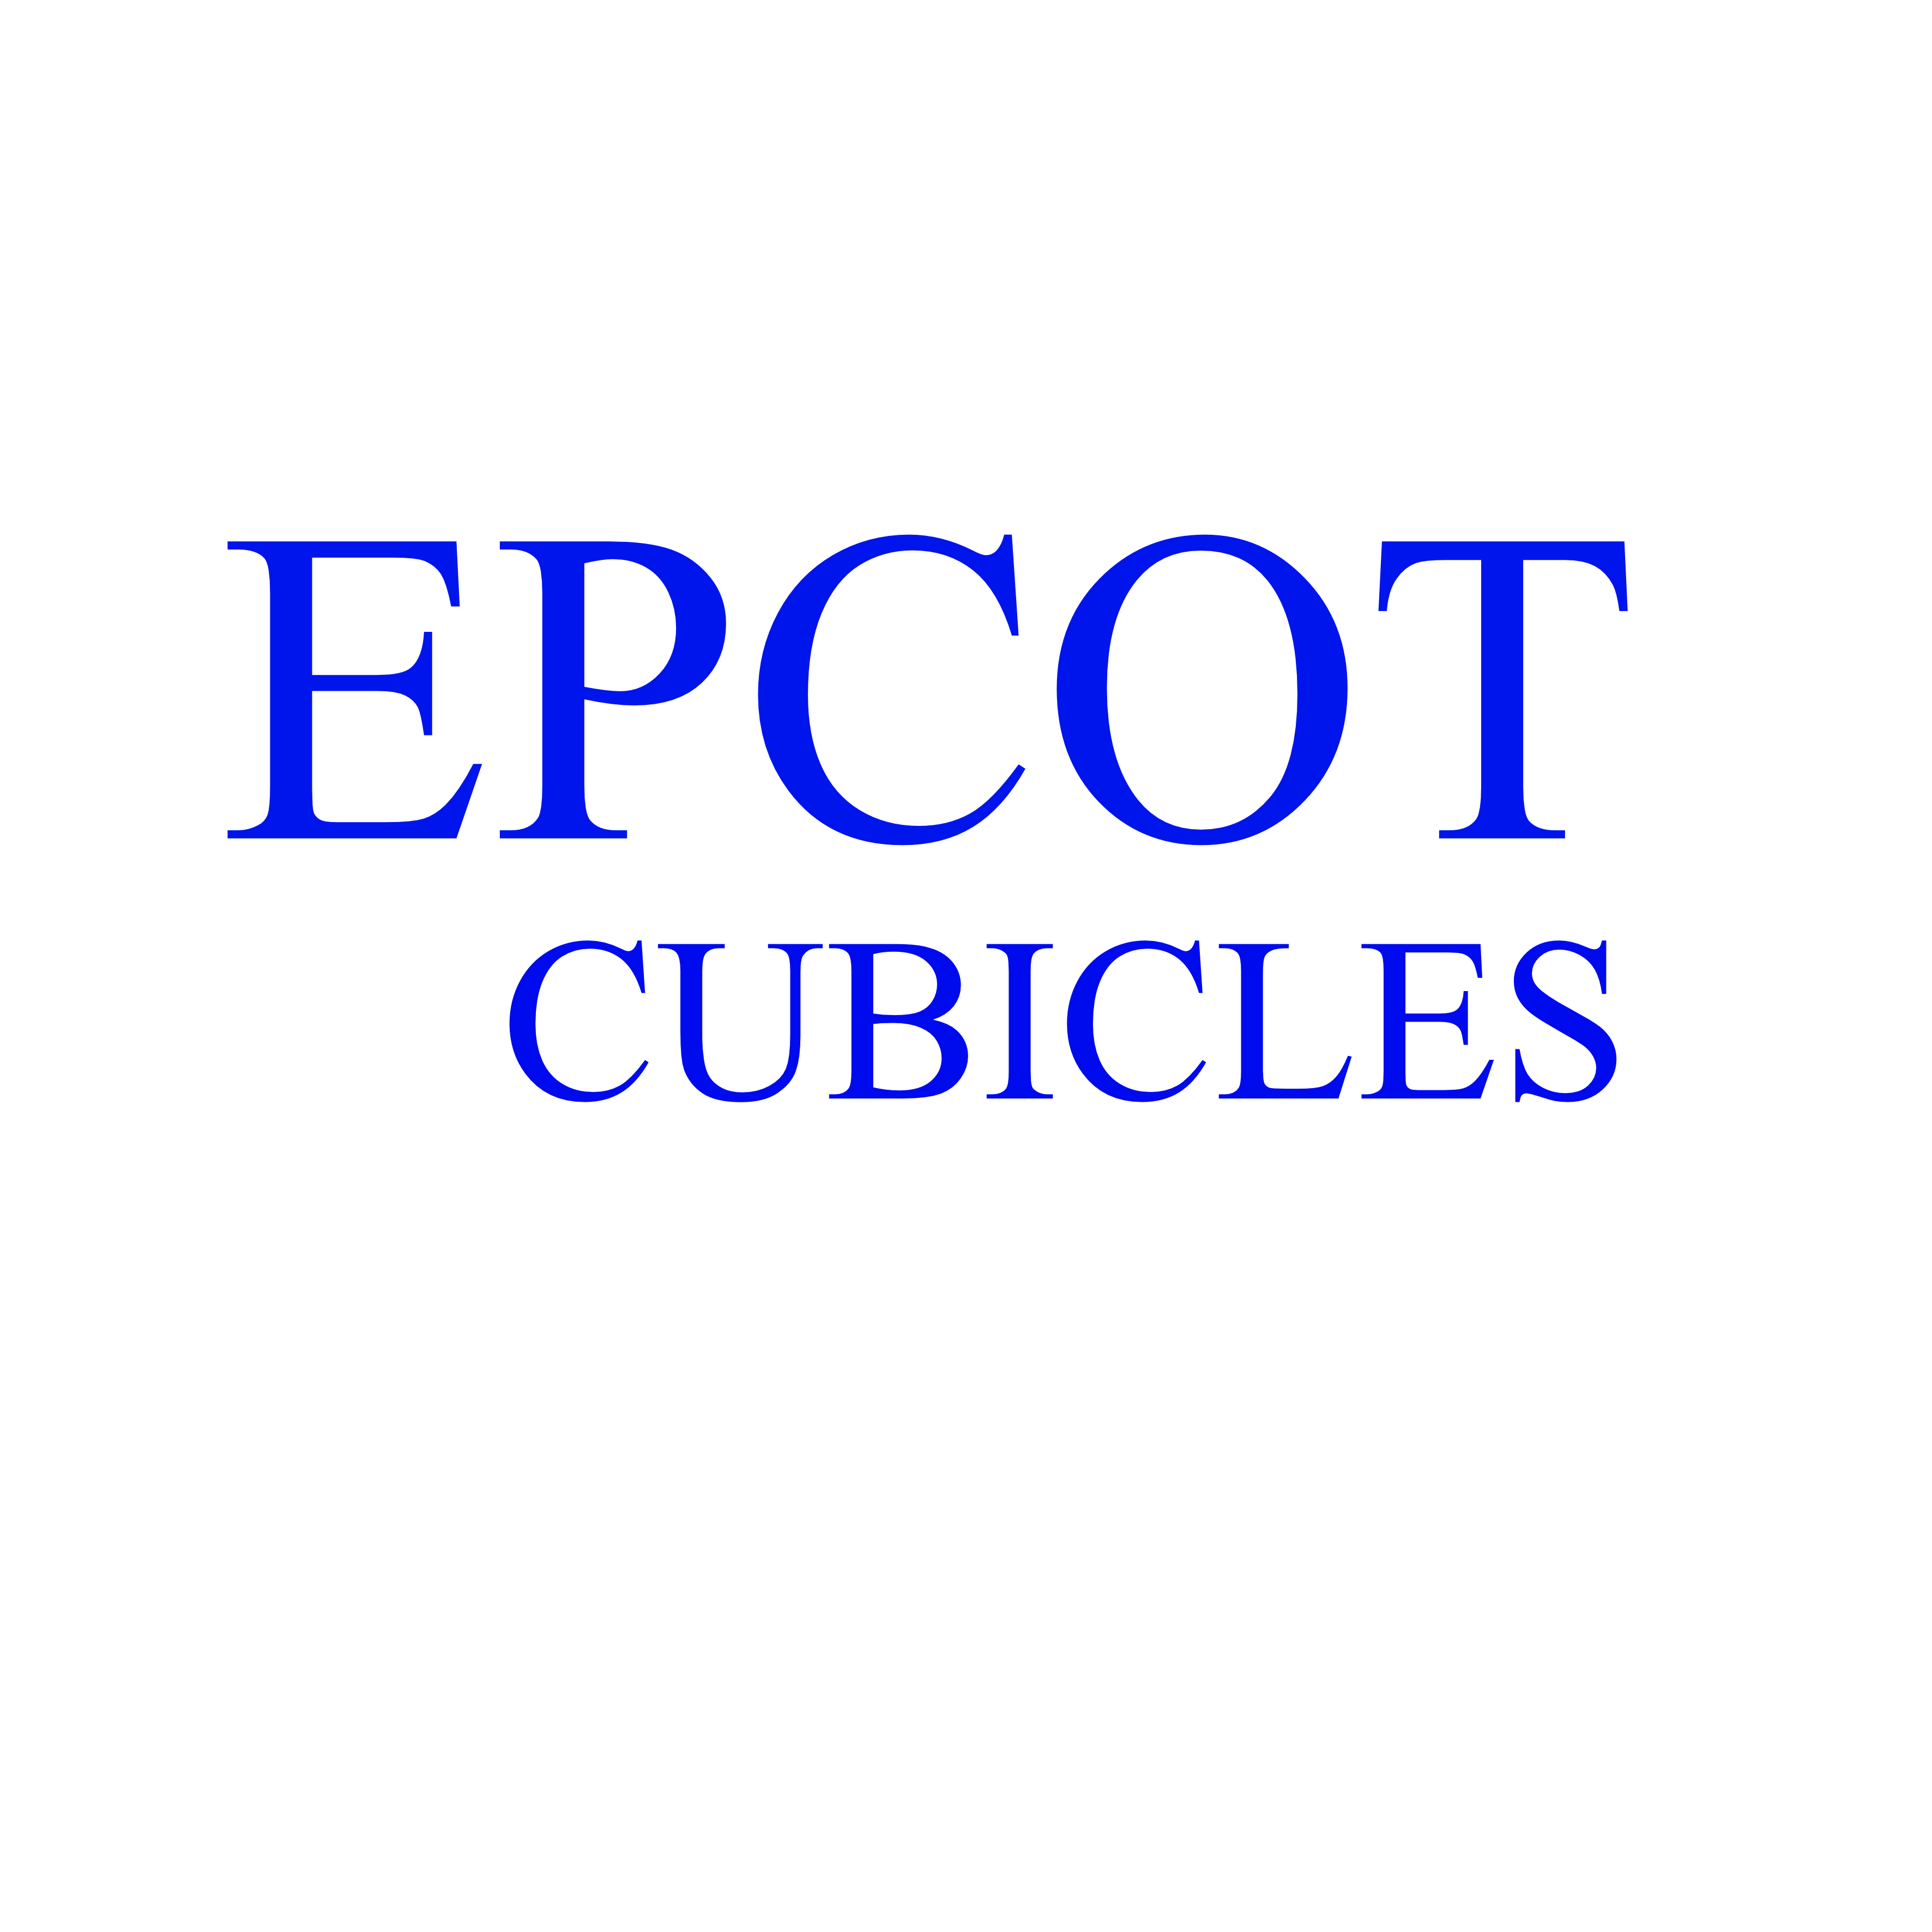 Epcot Cubicles